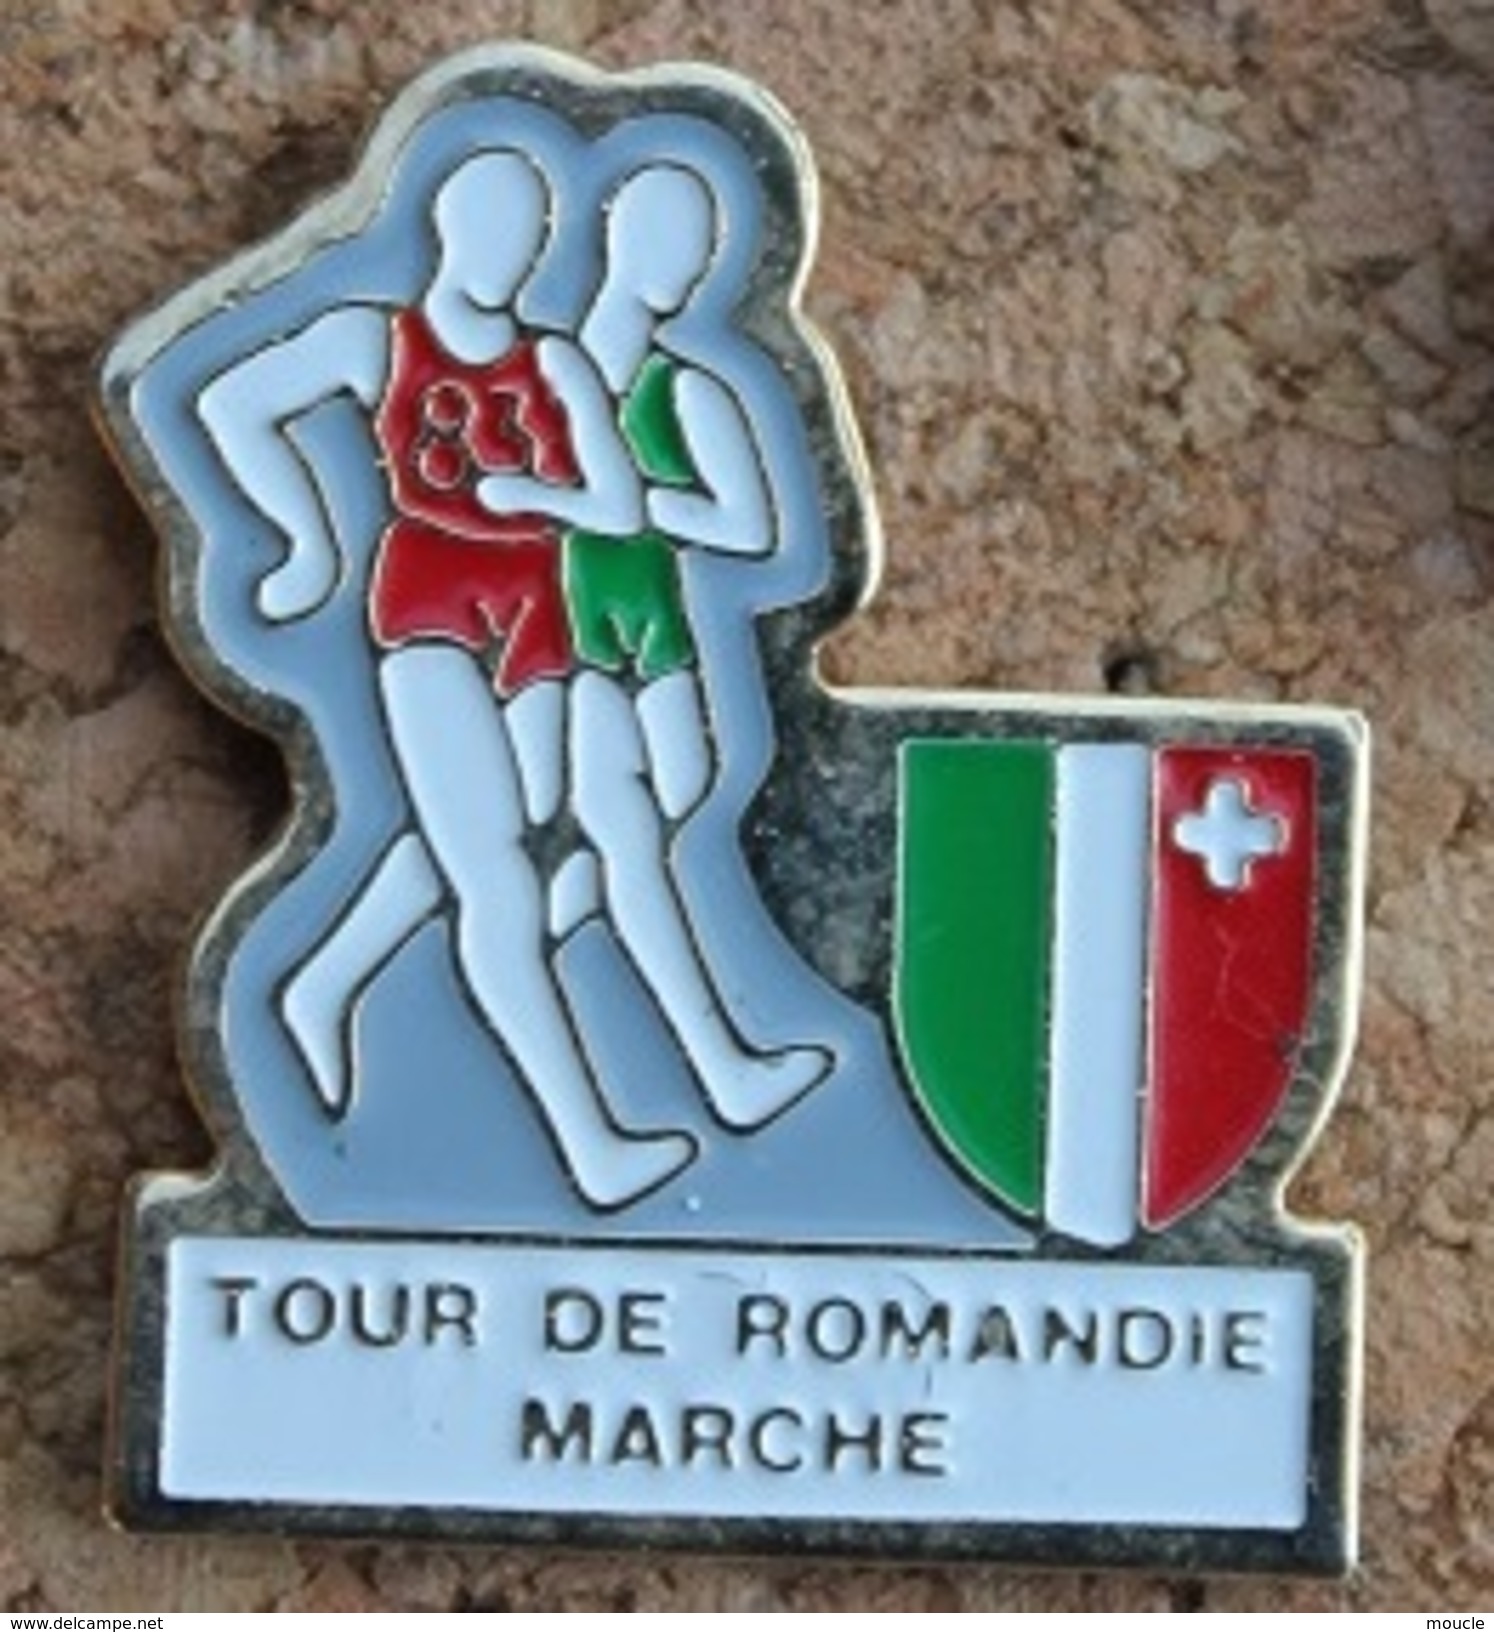 TOUR DE ROMANDIE A LA MARCHE - SUISSE - ETAPE DU CANTON DE NEUCHÂTEL - MARCHEURS - SCHWEIZ - SVIZZERA - SUIZA  -  (13) - Atletiek